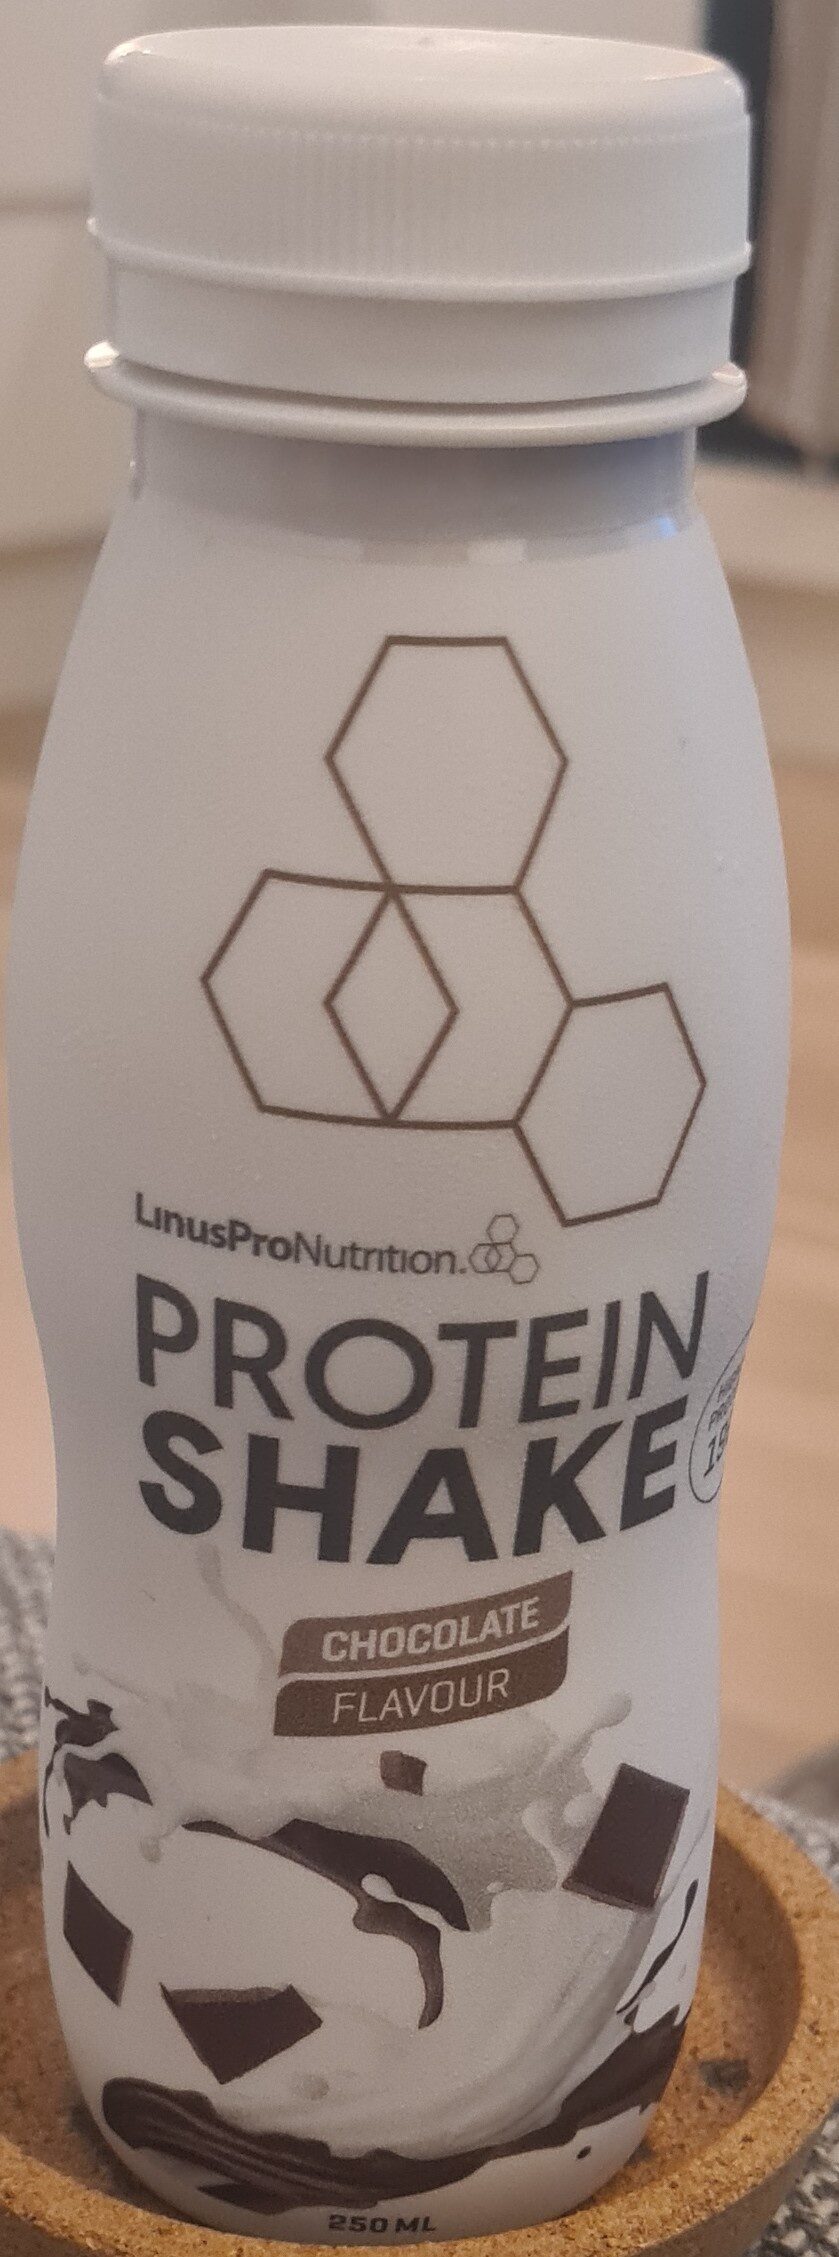 protein shake chocolate - Produkt - en